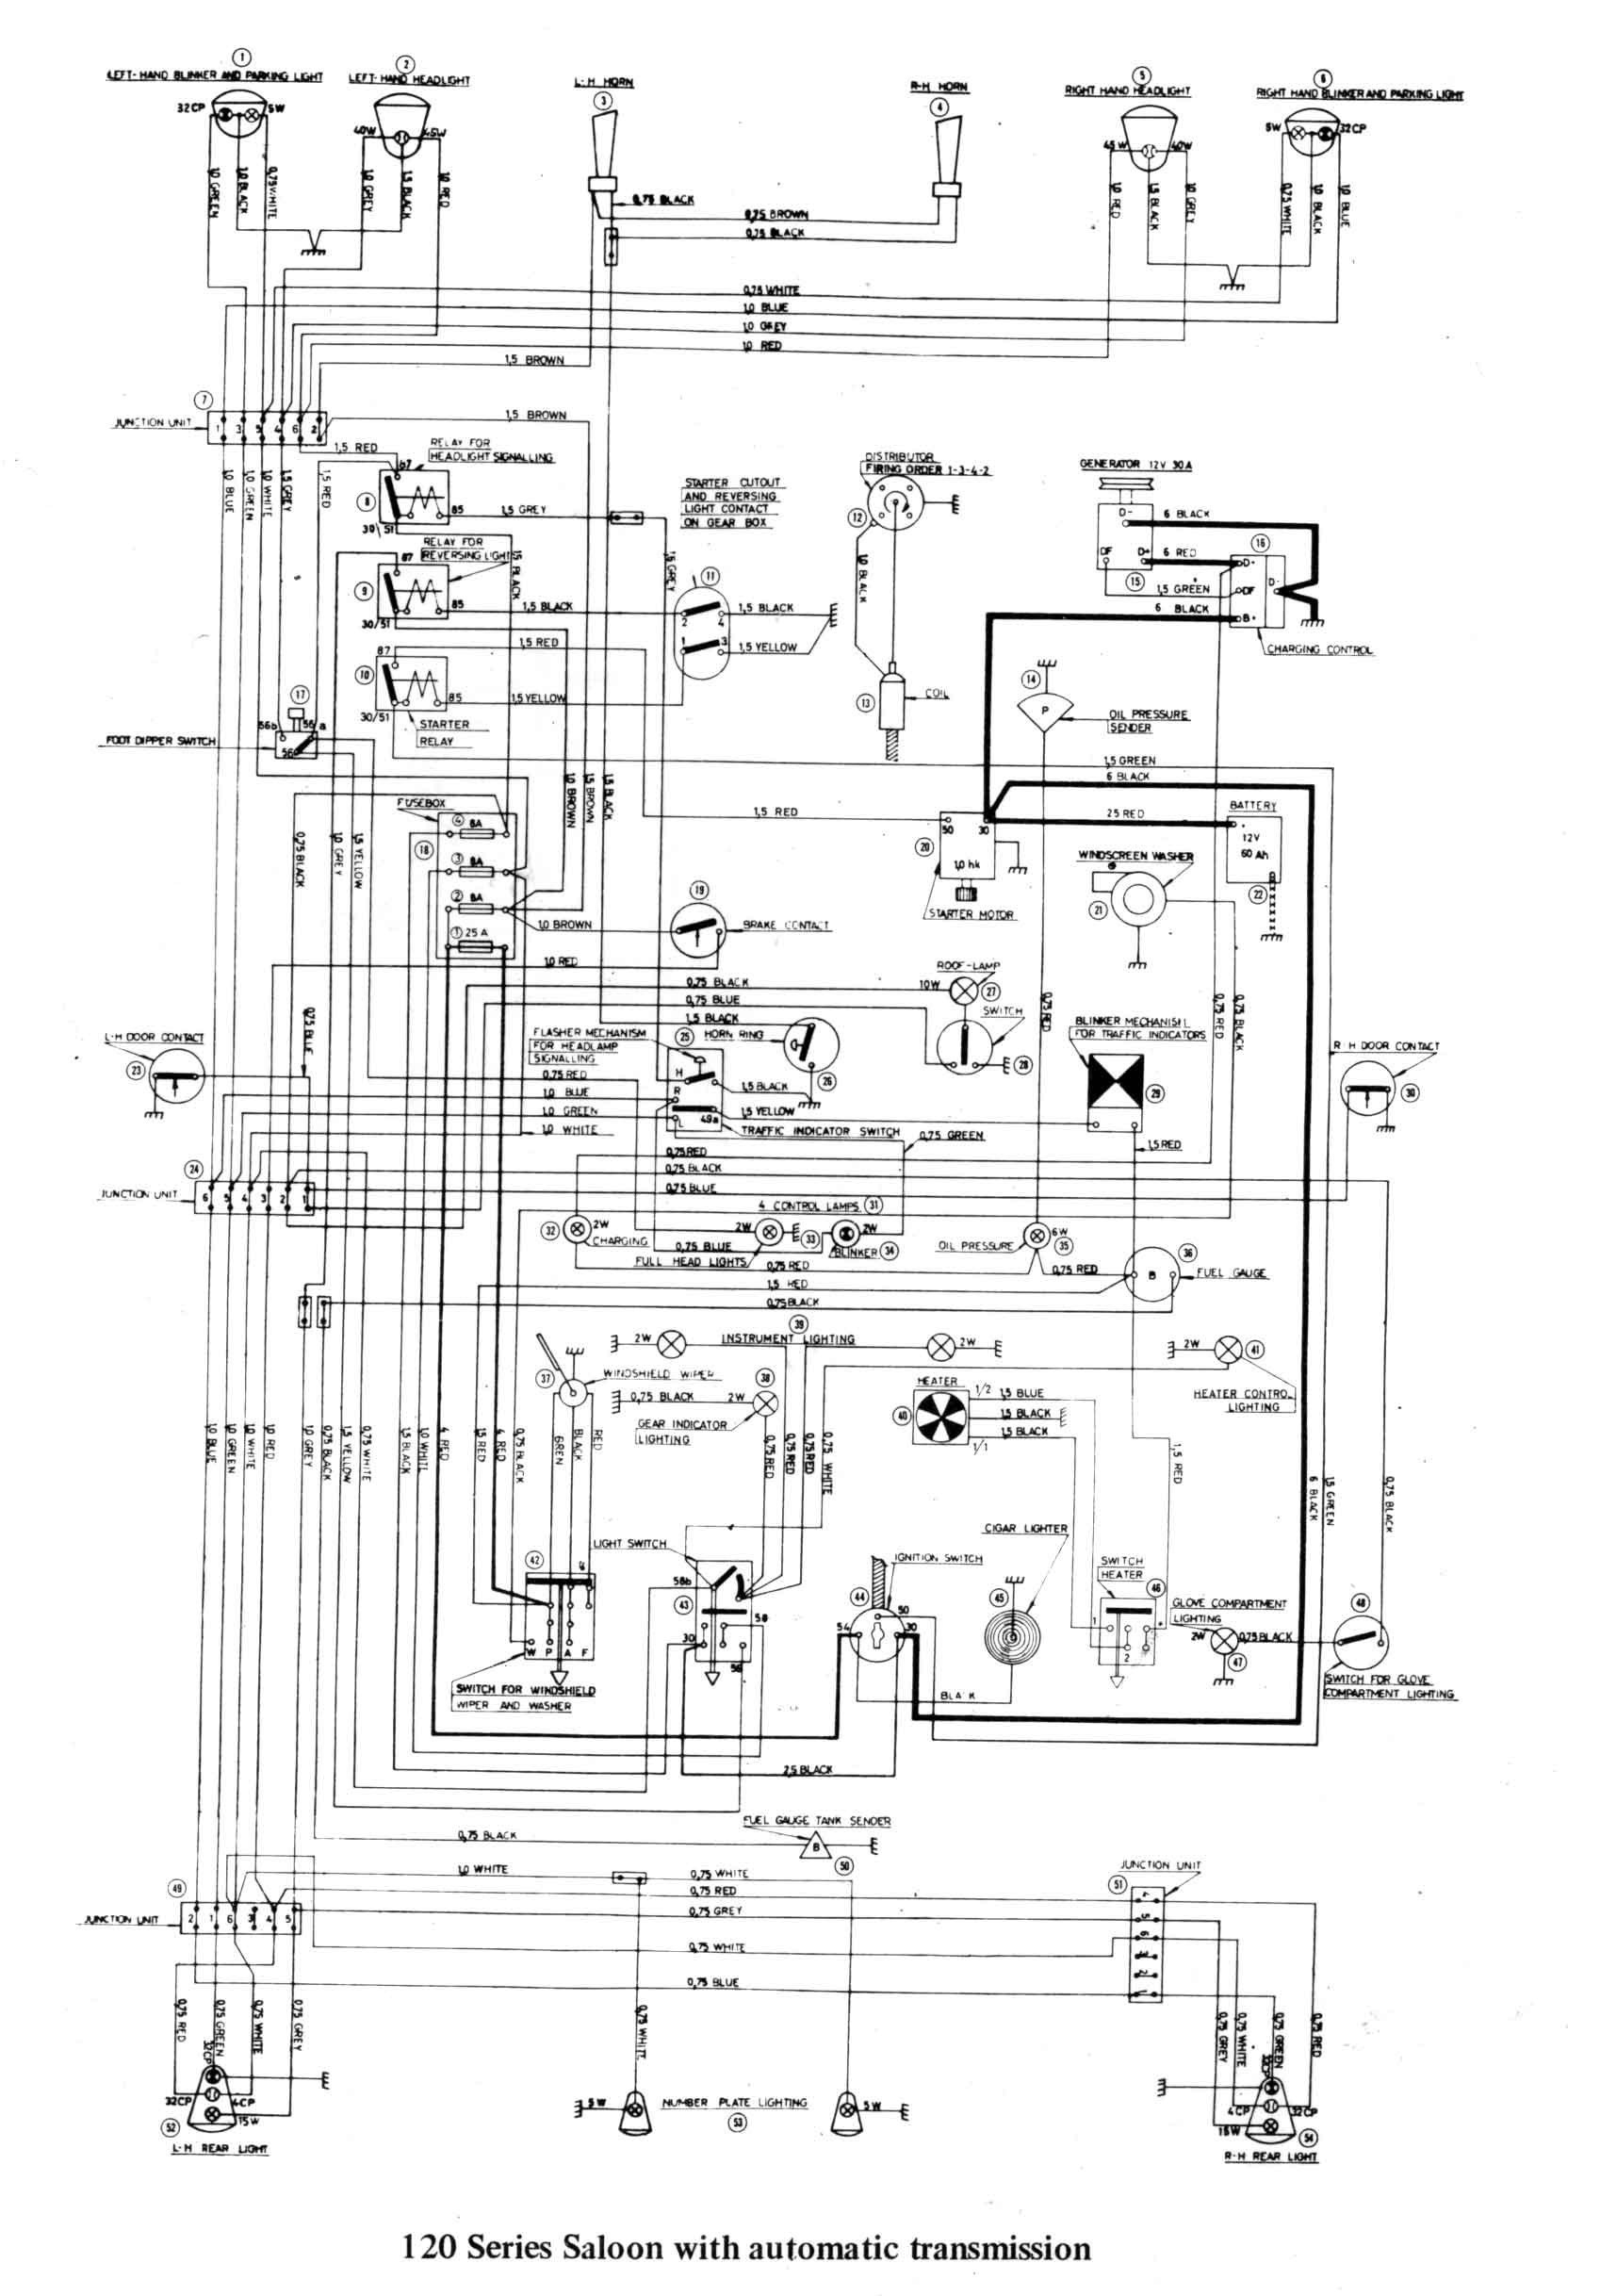 Wiring Diagram for Club Car Precedent New Ezgo Wiring Diagram Unique Starter Wiring Diagram Elegant Sw